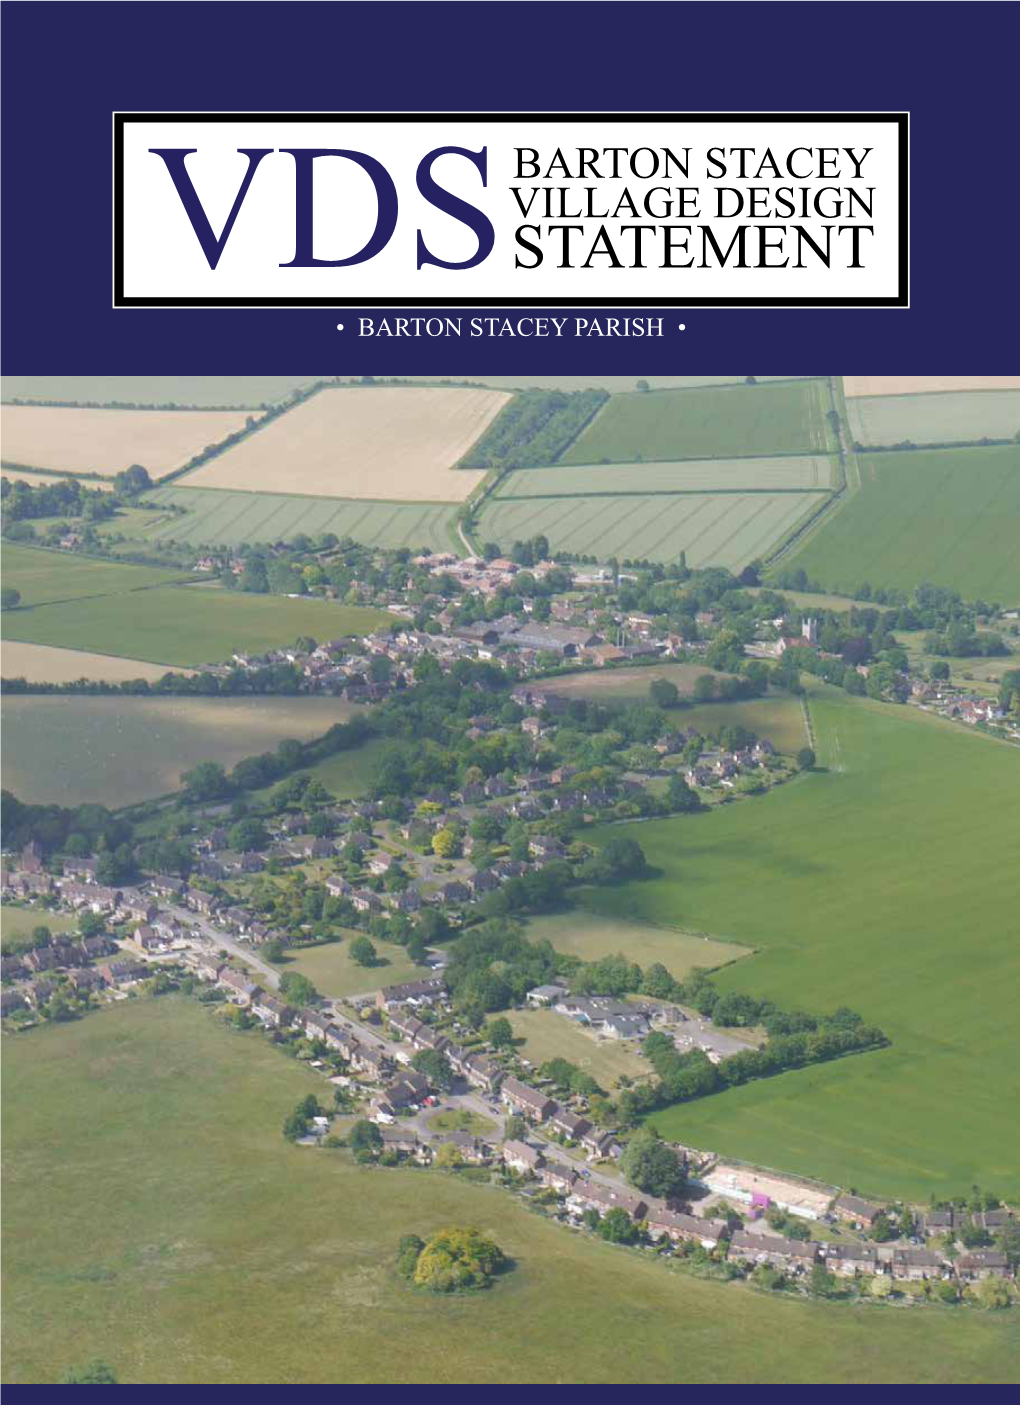 View the Barton Stacey Village Design Statement